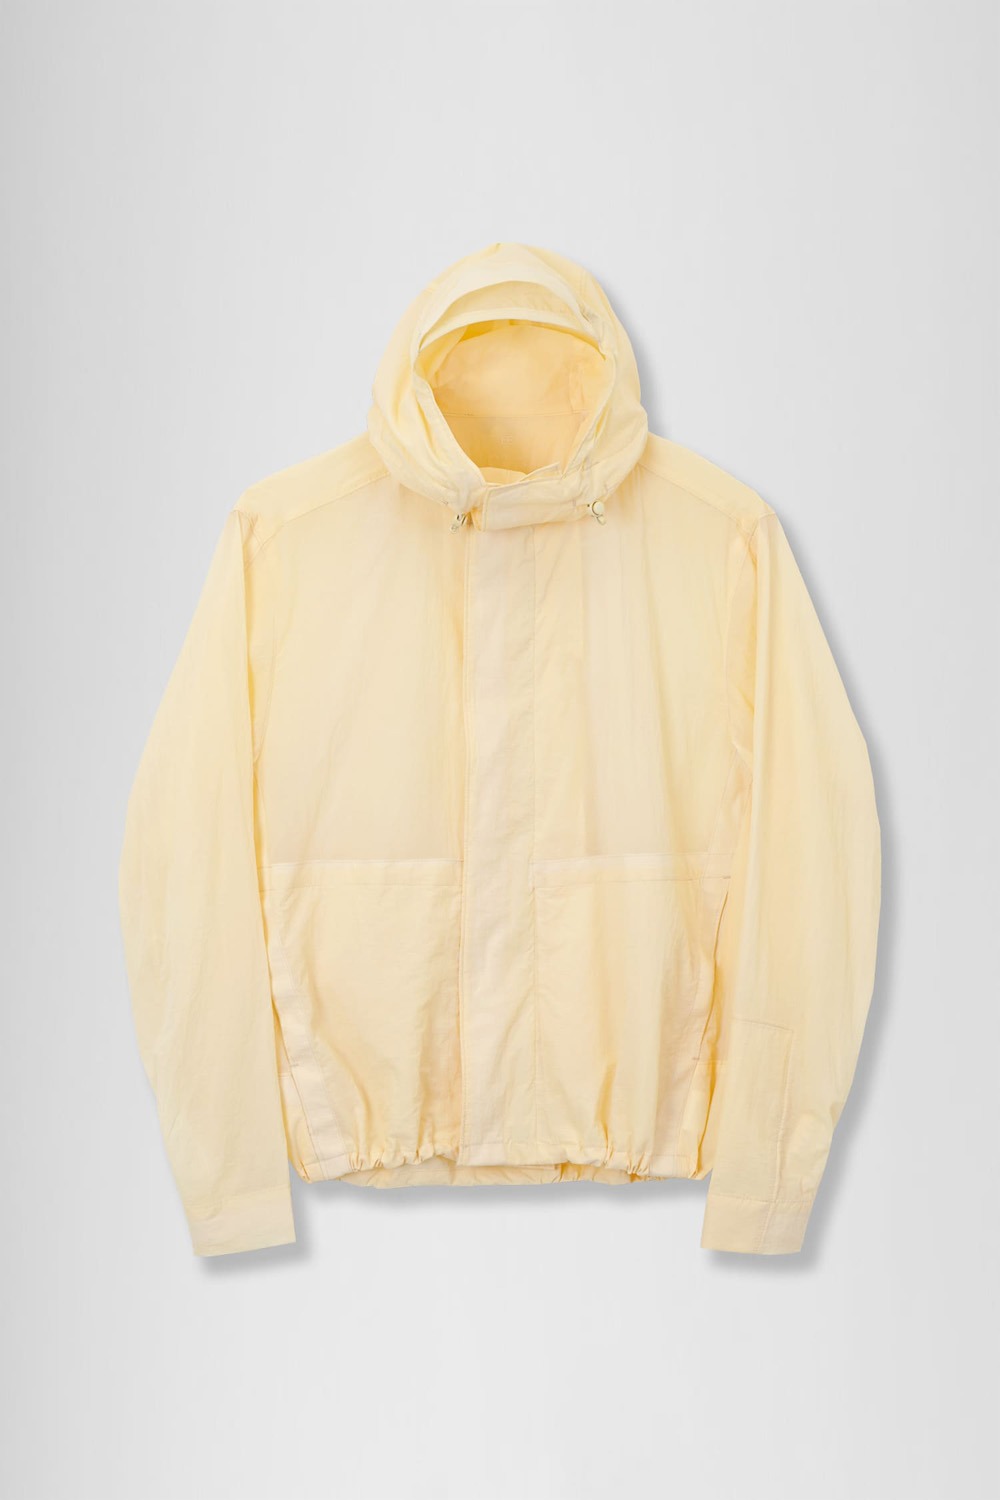 Nylon Hooded Jacket (Women)_Yellow